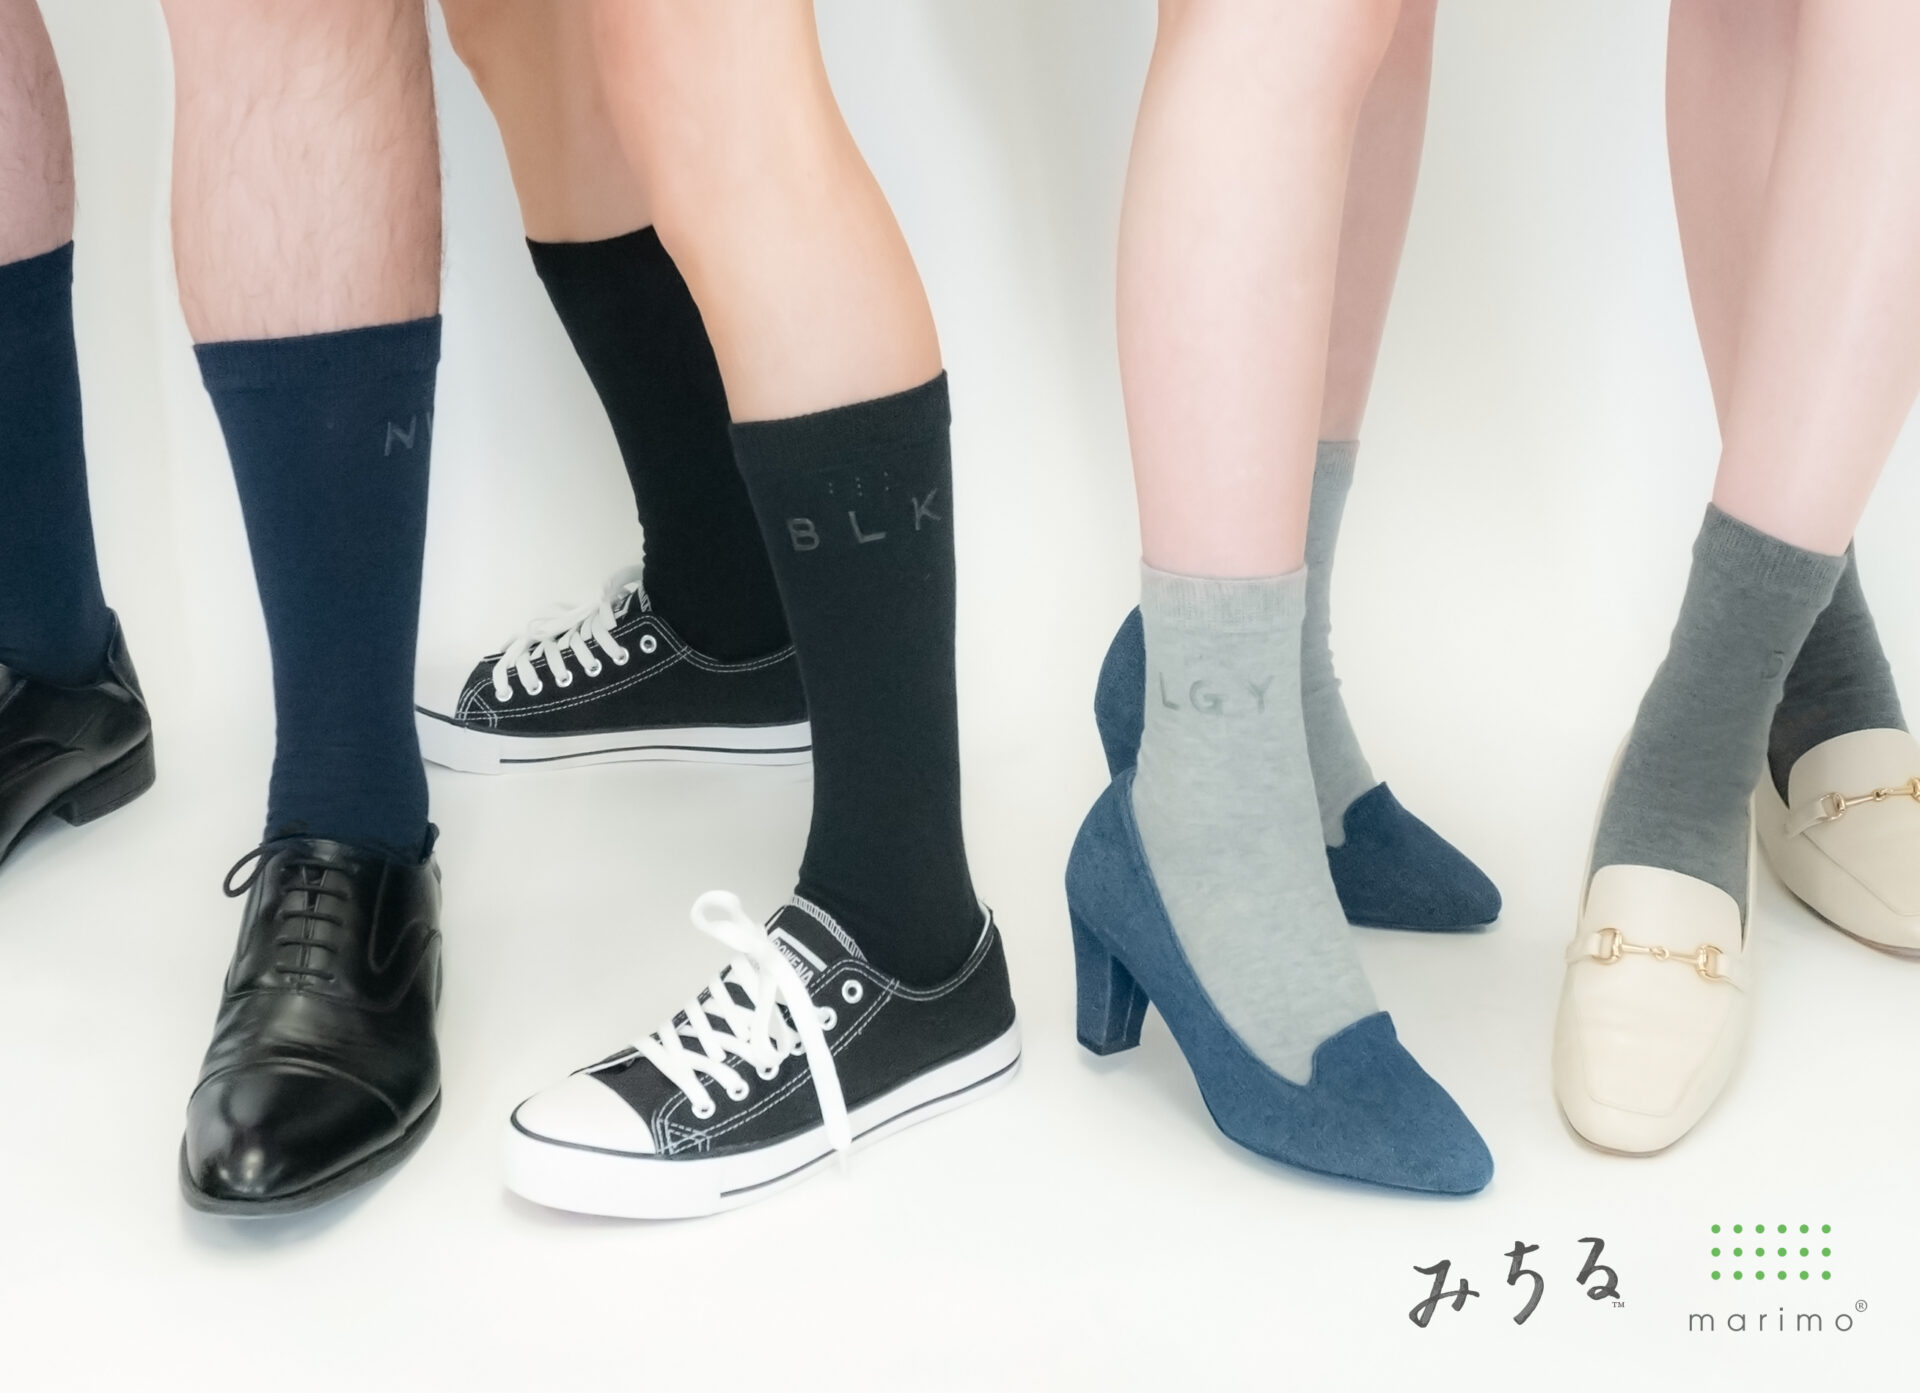 靴下専門商社のマリモから発売された靴下をはいた男女の足元の写真。靴下には色の英語めいを３文字に短縮した点字とローマ字が浮き出た文字でハイっていて、さわることで色がわかるようになっています。